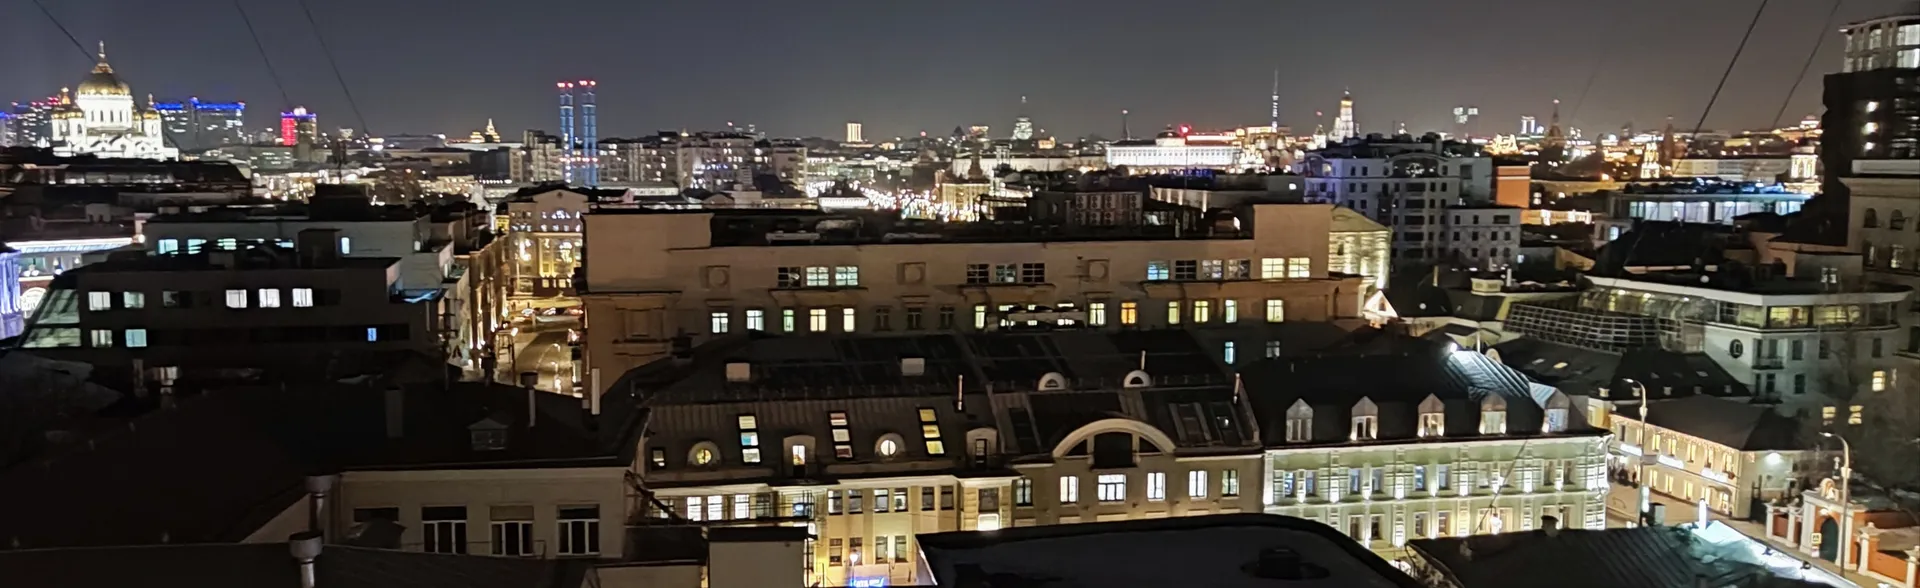 Вид на Кремль и Храм Христа Спасителя с балкона подъезда, нашего этажа